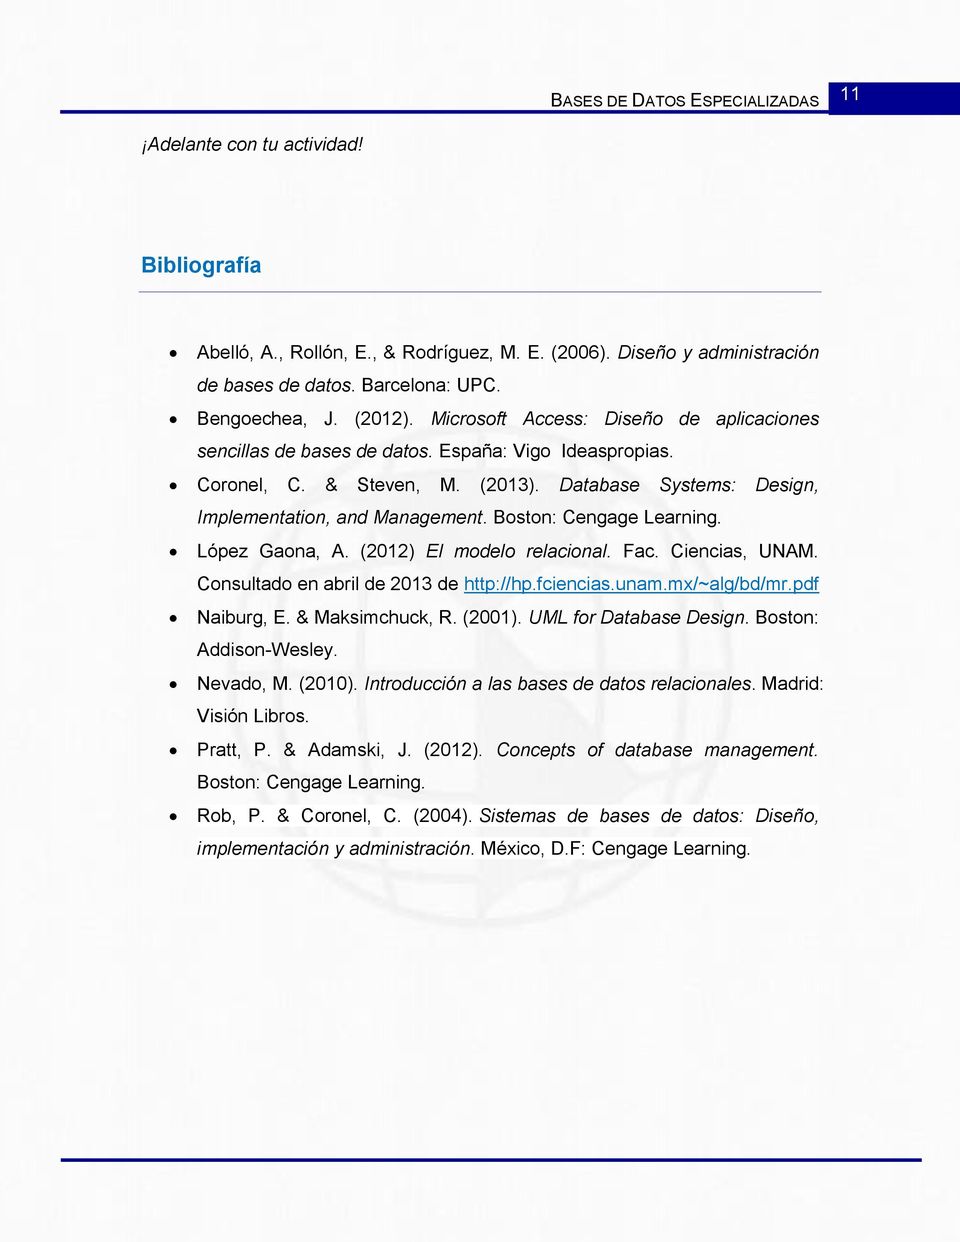 Boston: Cengage Learning. López Gaona, A. (2012) El modelo relacional. Fac. Ciencias, UNAM. Consultado en abril de 2013 de http://hp.fciencias.unam.mx/~alg/bd/mr.pdf Naiburg, E. & Maksimchuck, R.